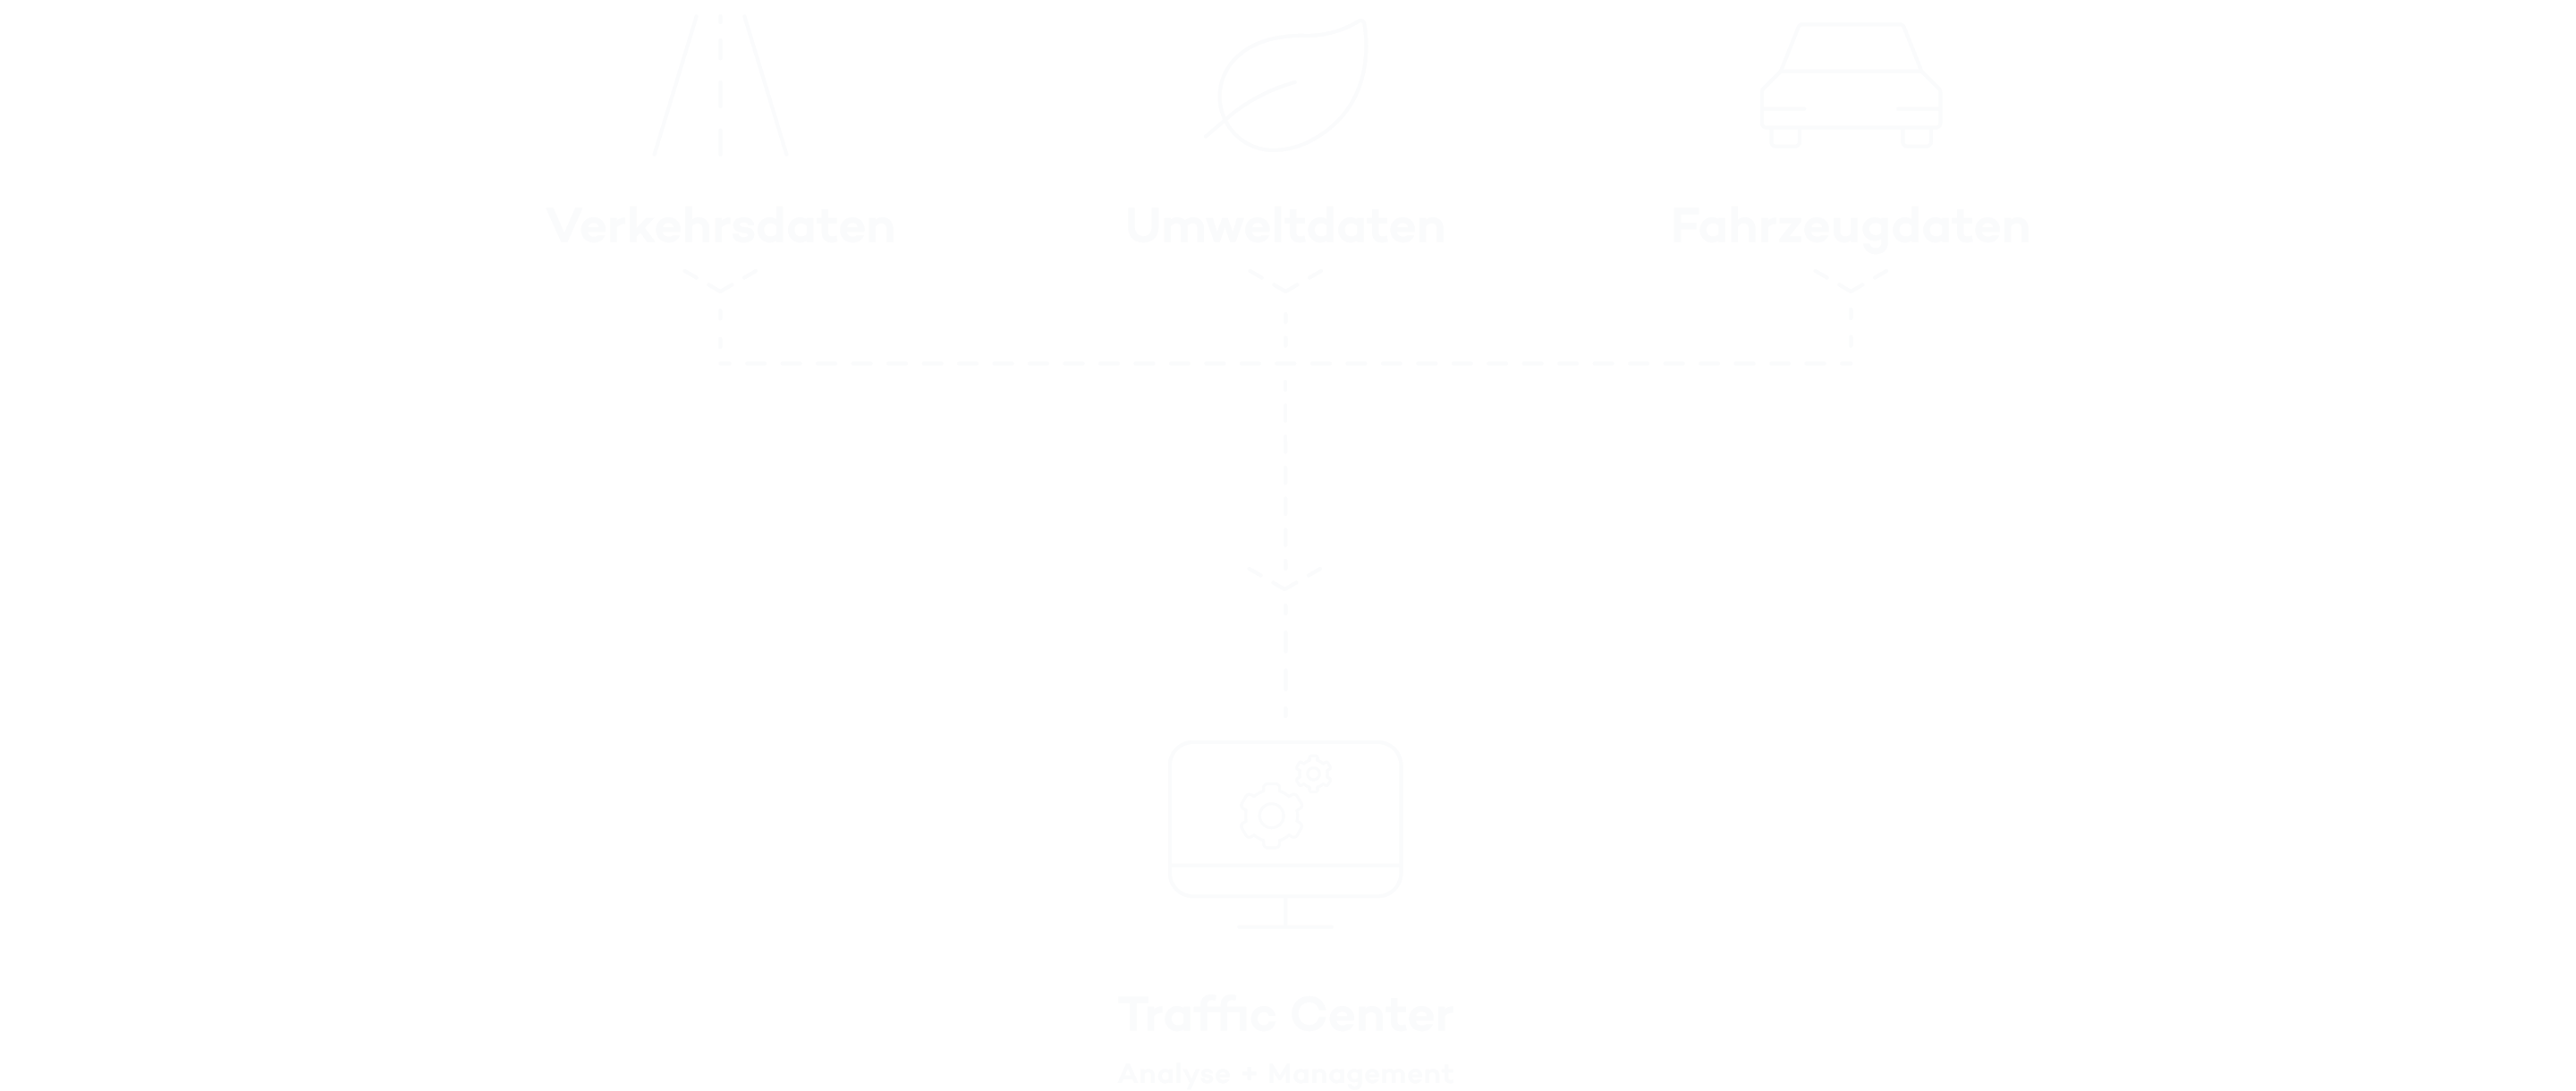 Ein smartes Netzwerk für die Verkehrssteuerung								